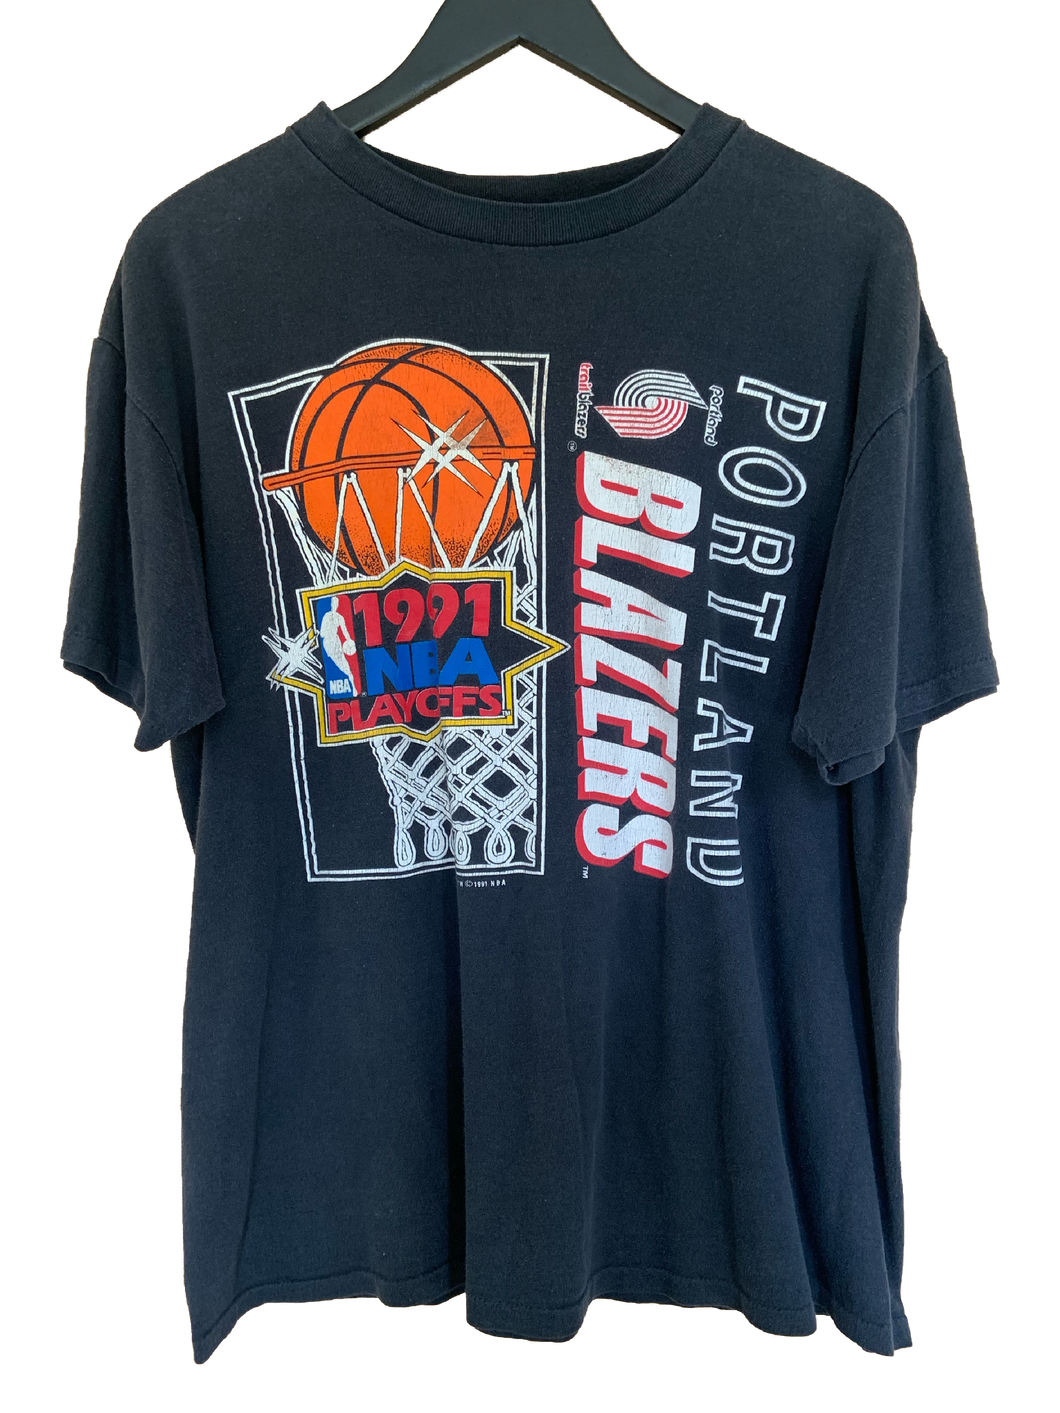 1991 NBA PLAYOFFS BLAZERS 'SS' TEE - XL